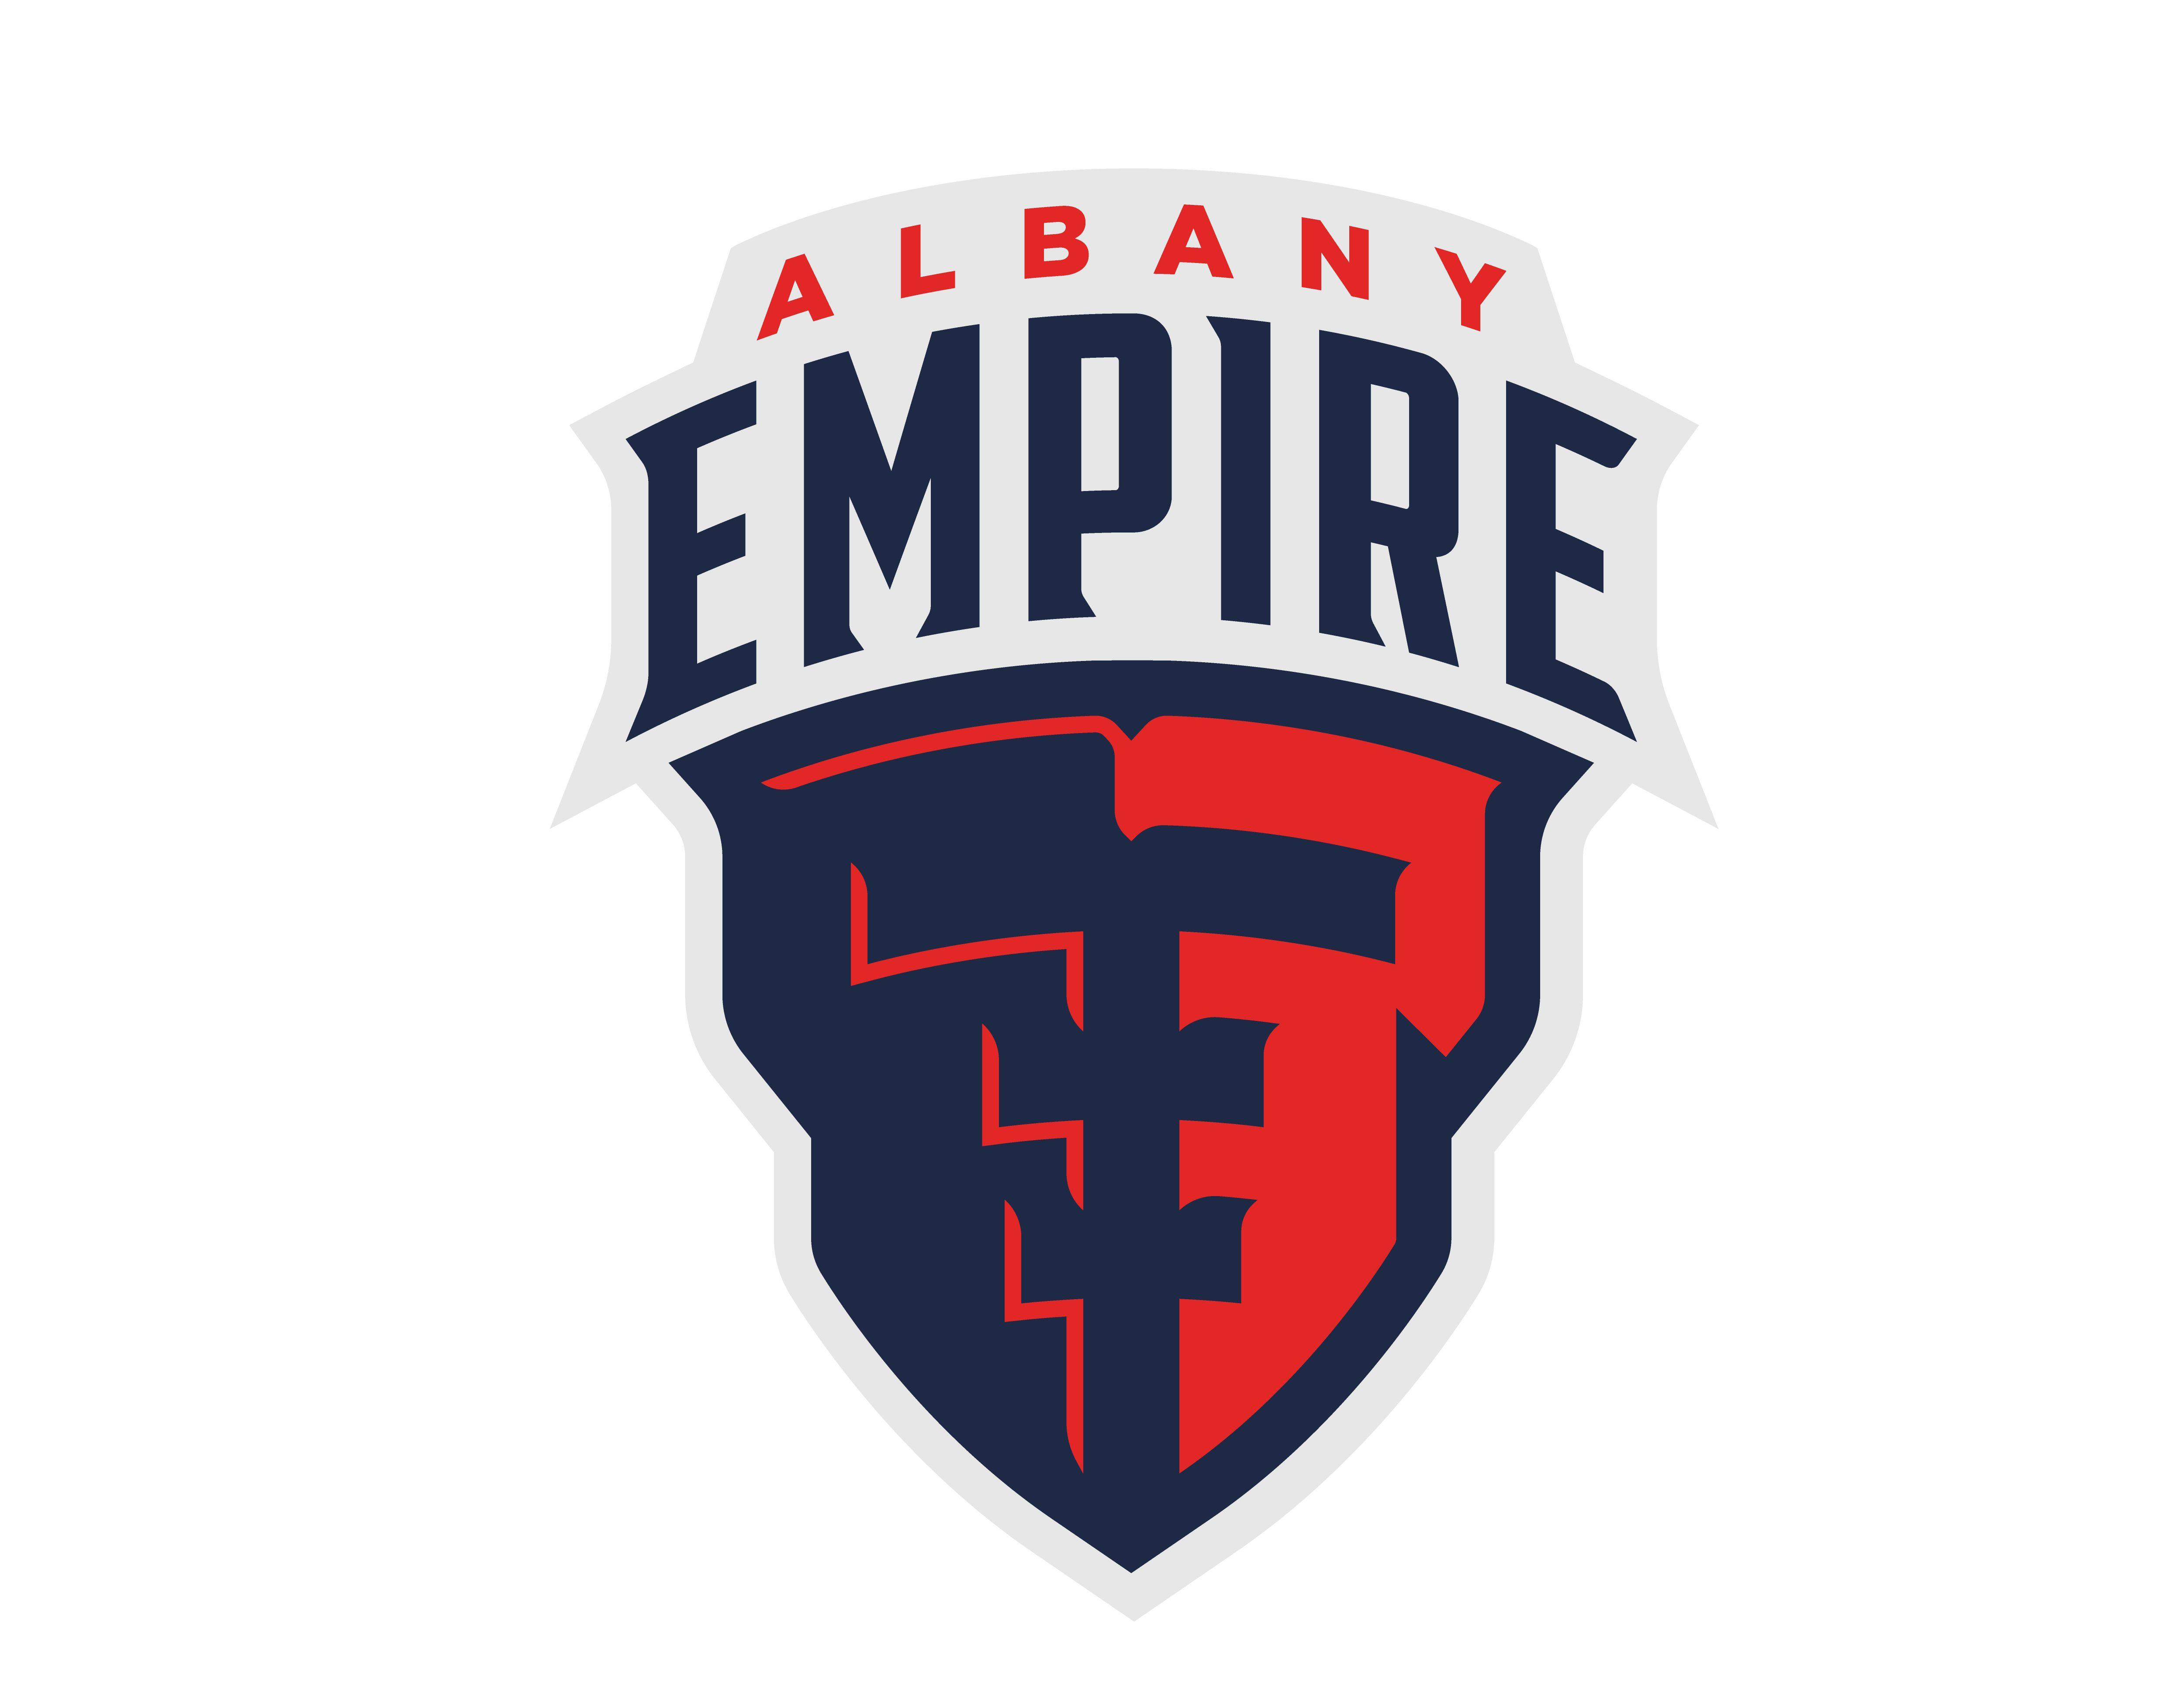 Empire Logo - Albany Empire Announced as AFL Team Name and Logo | Capital Region ...